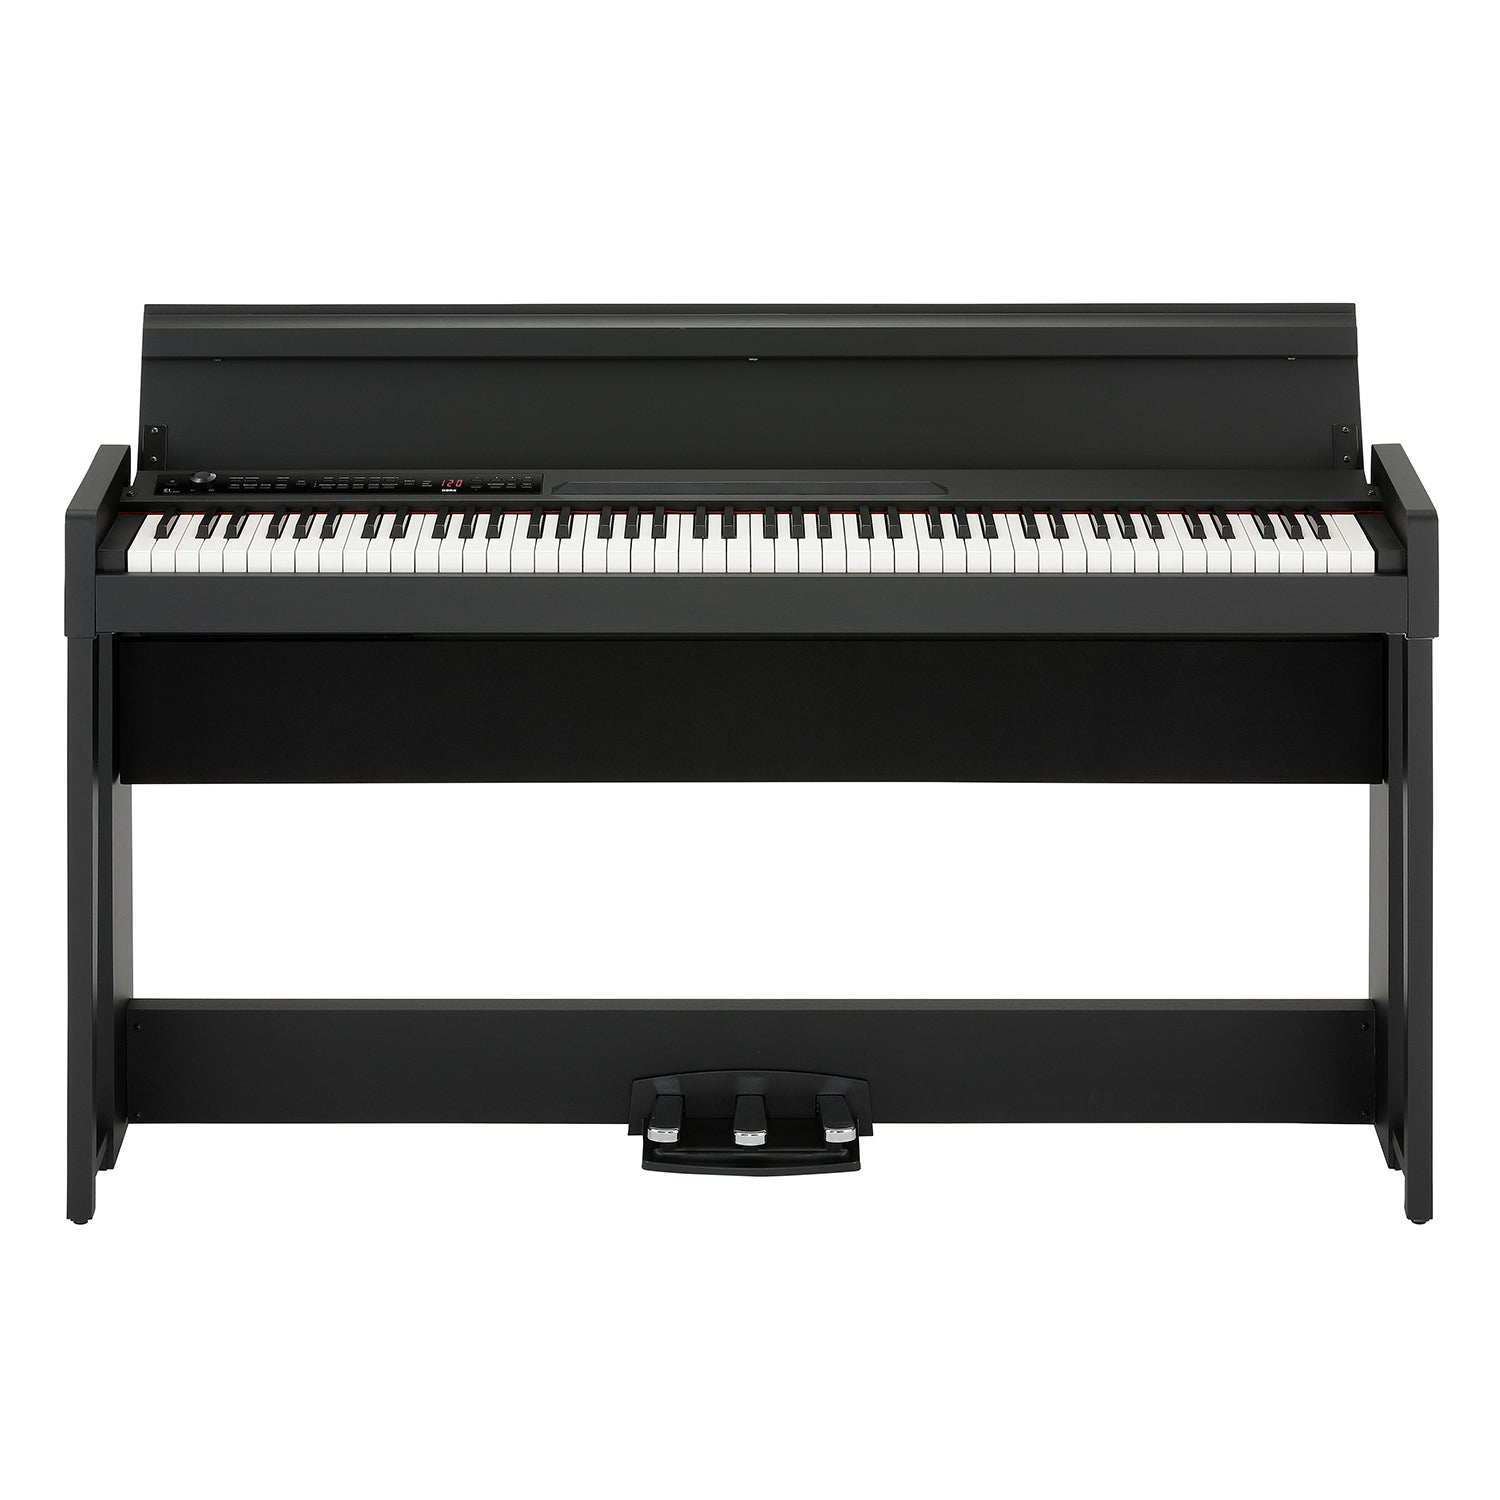 C1 Digital Piano - Black KORG USA Official Store